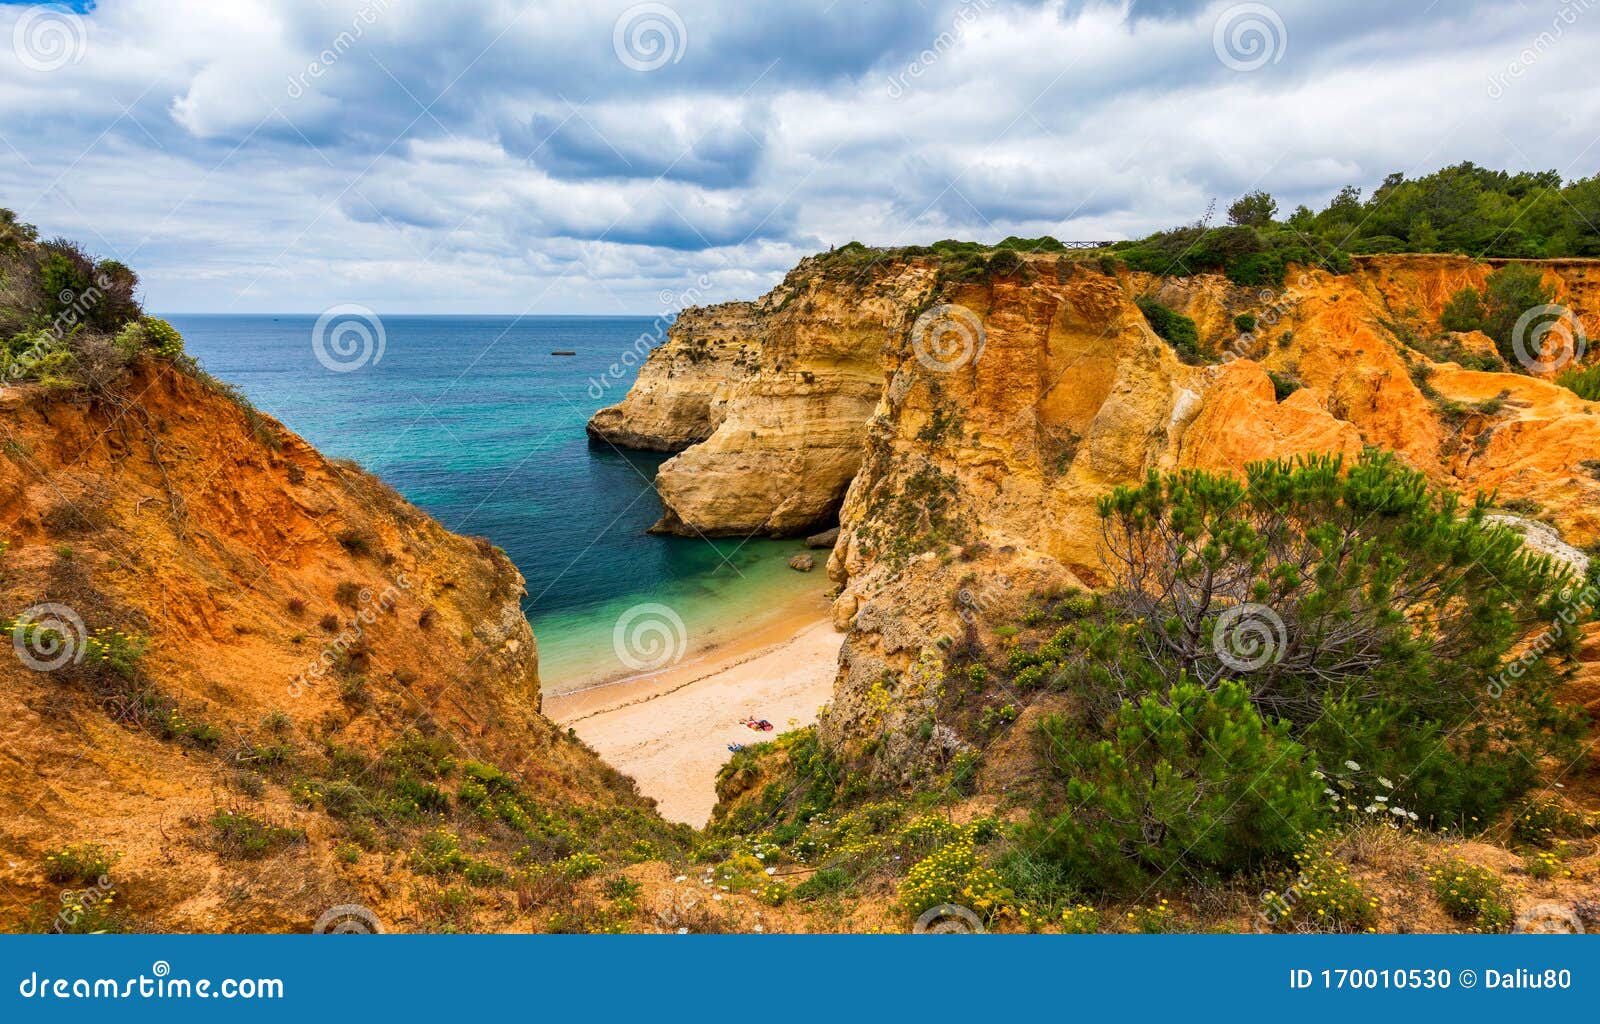 submarino beach (praia do submarino  in portuguese), located in alvor, region of algarve, portugal. praia do submarino,